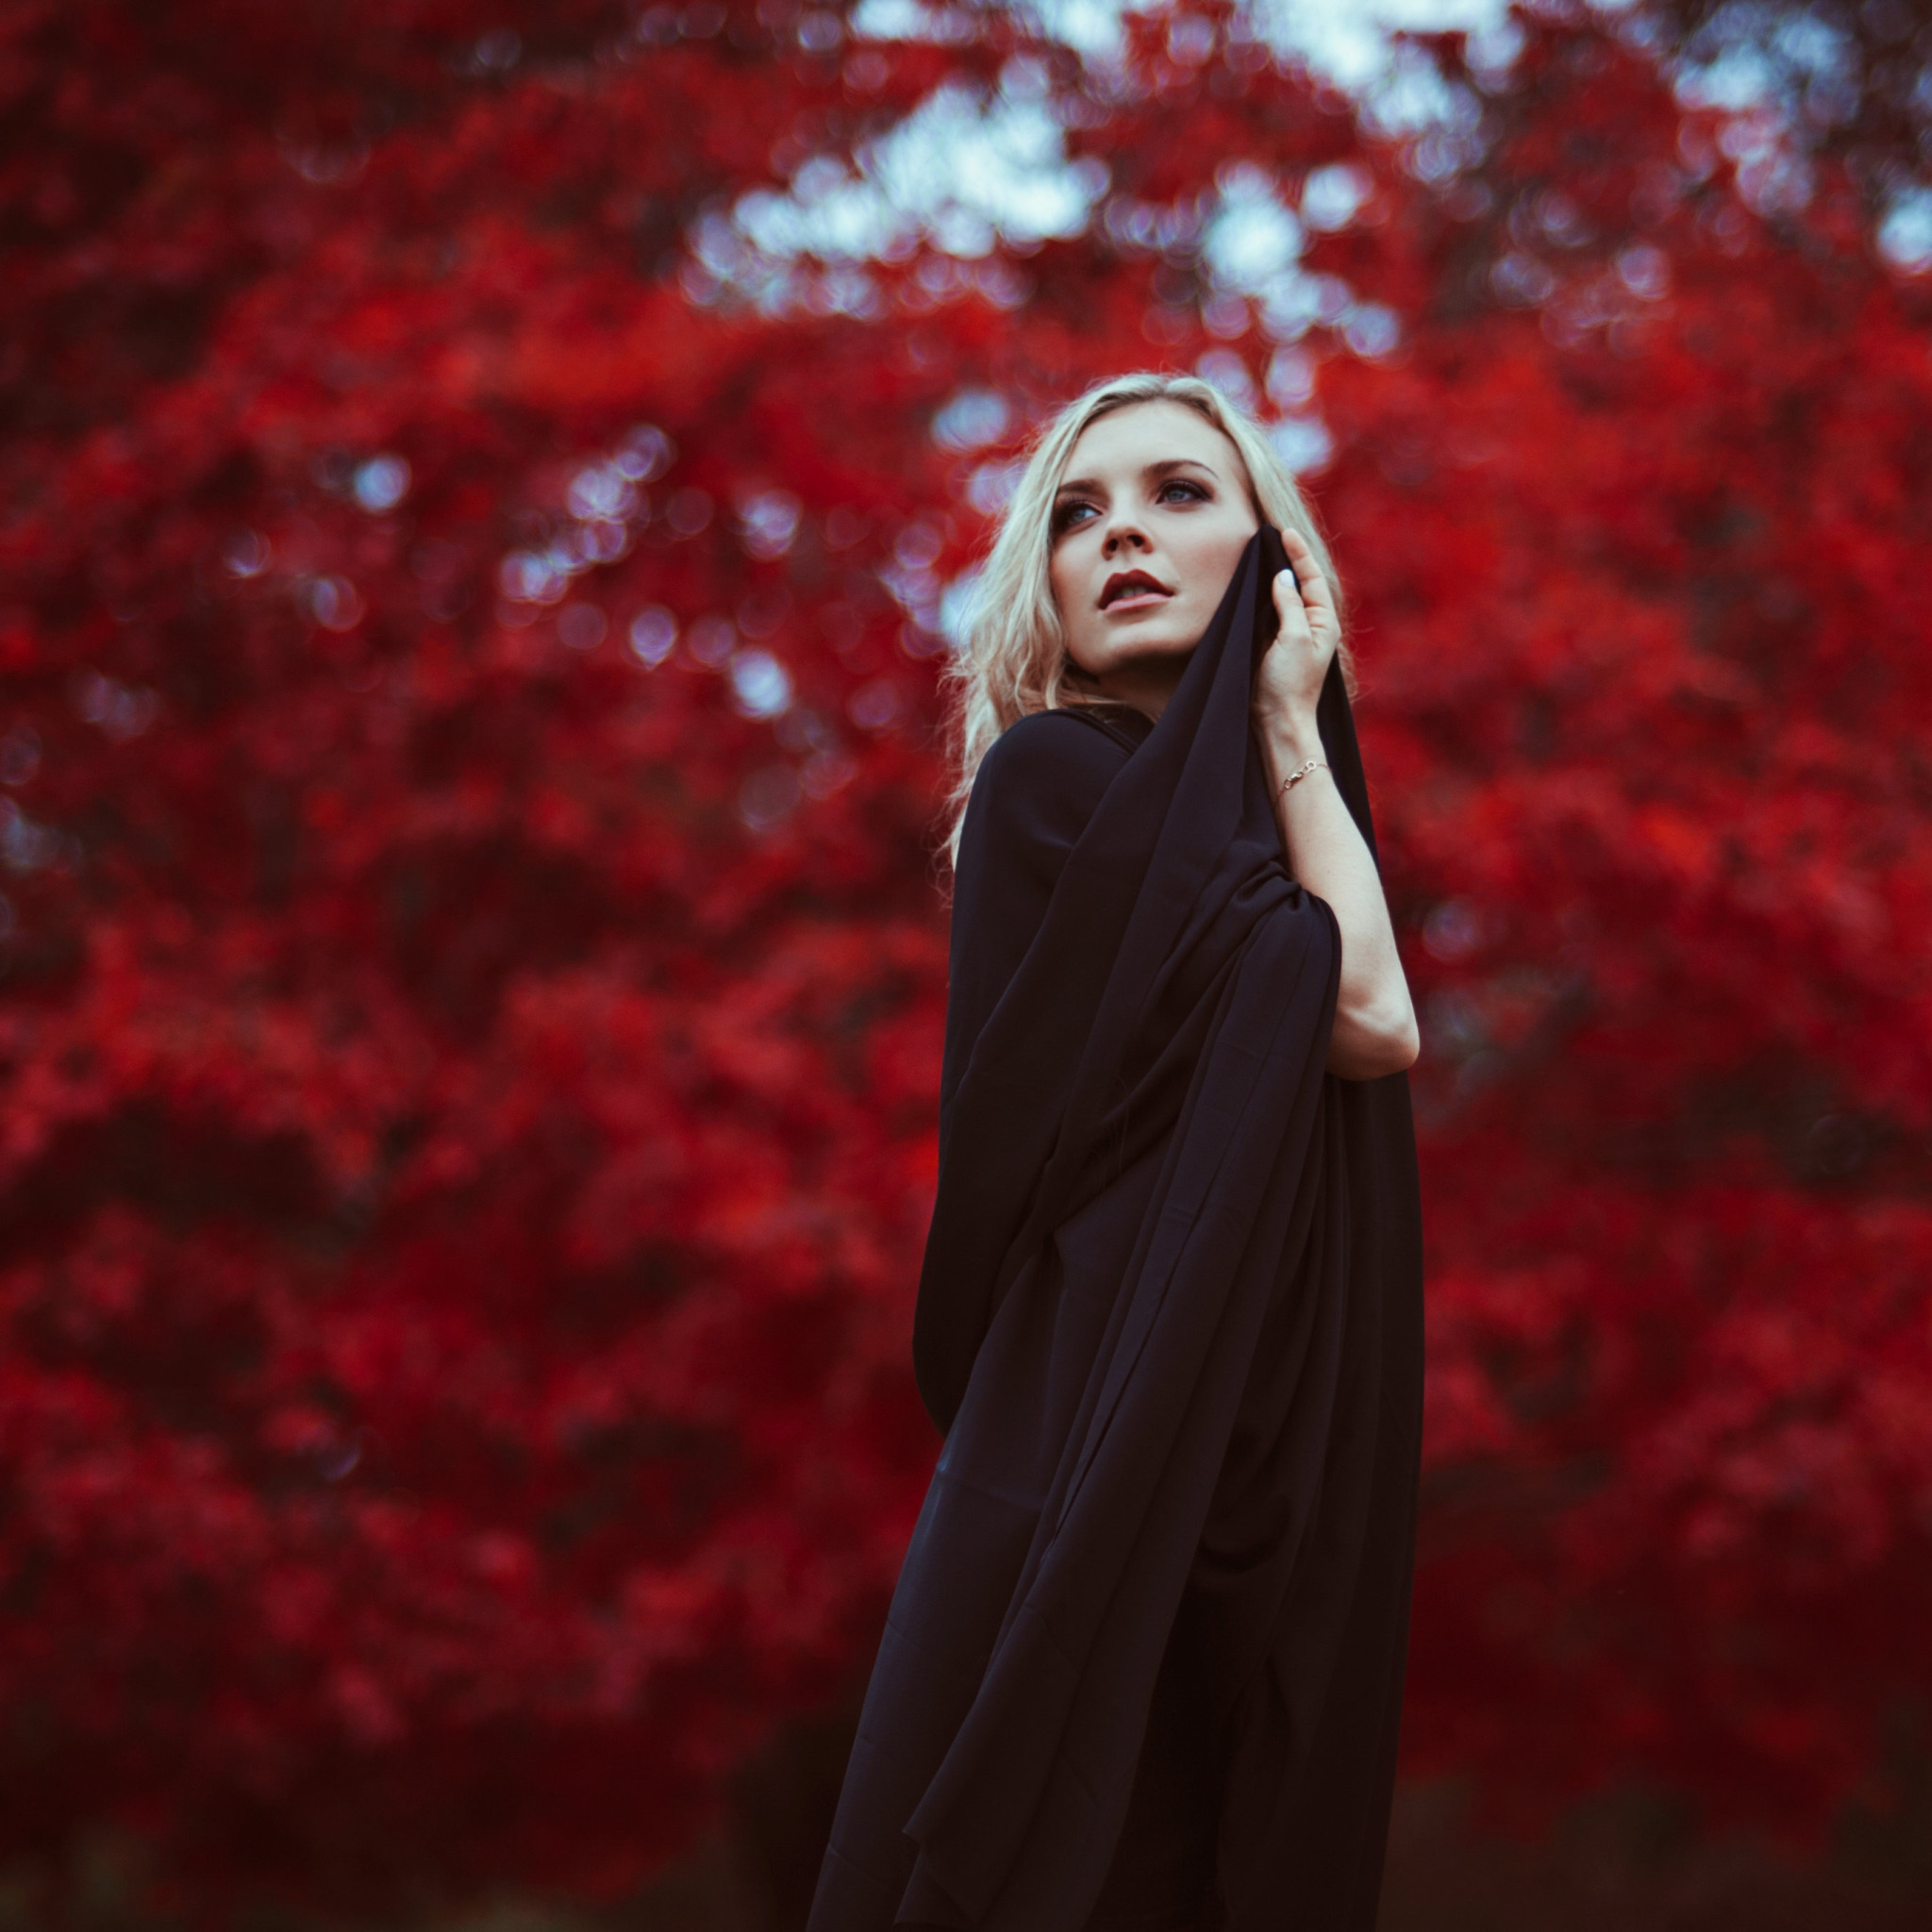 Dead blonde красный. Темное платье с листьями. Red autumn блоггер. Фото девушки блондинки в чёрном платье в парке.